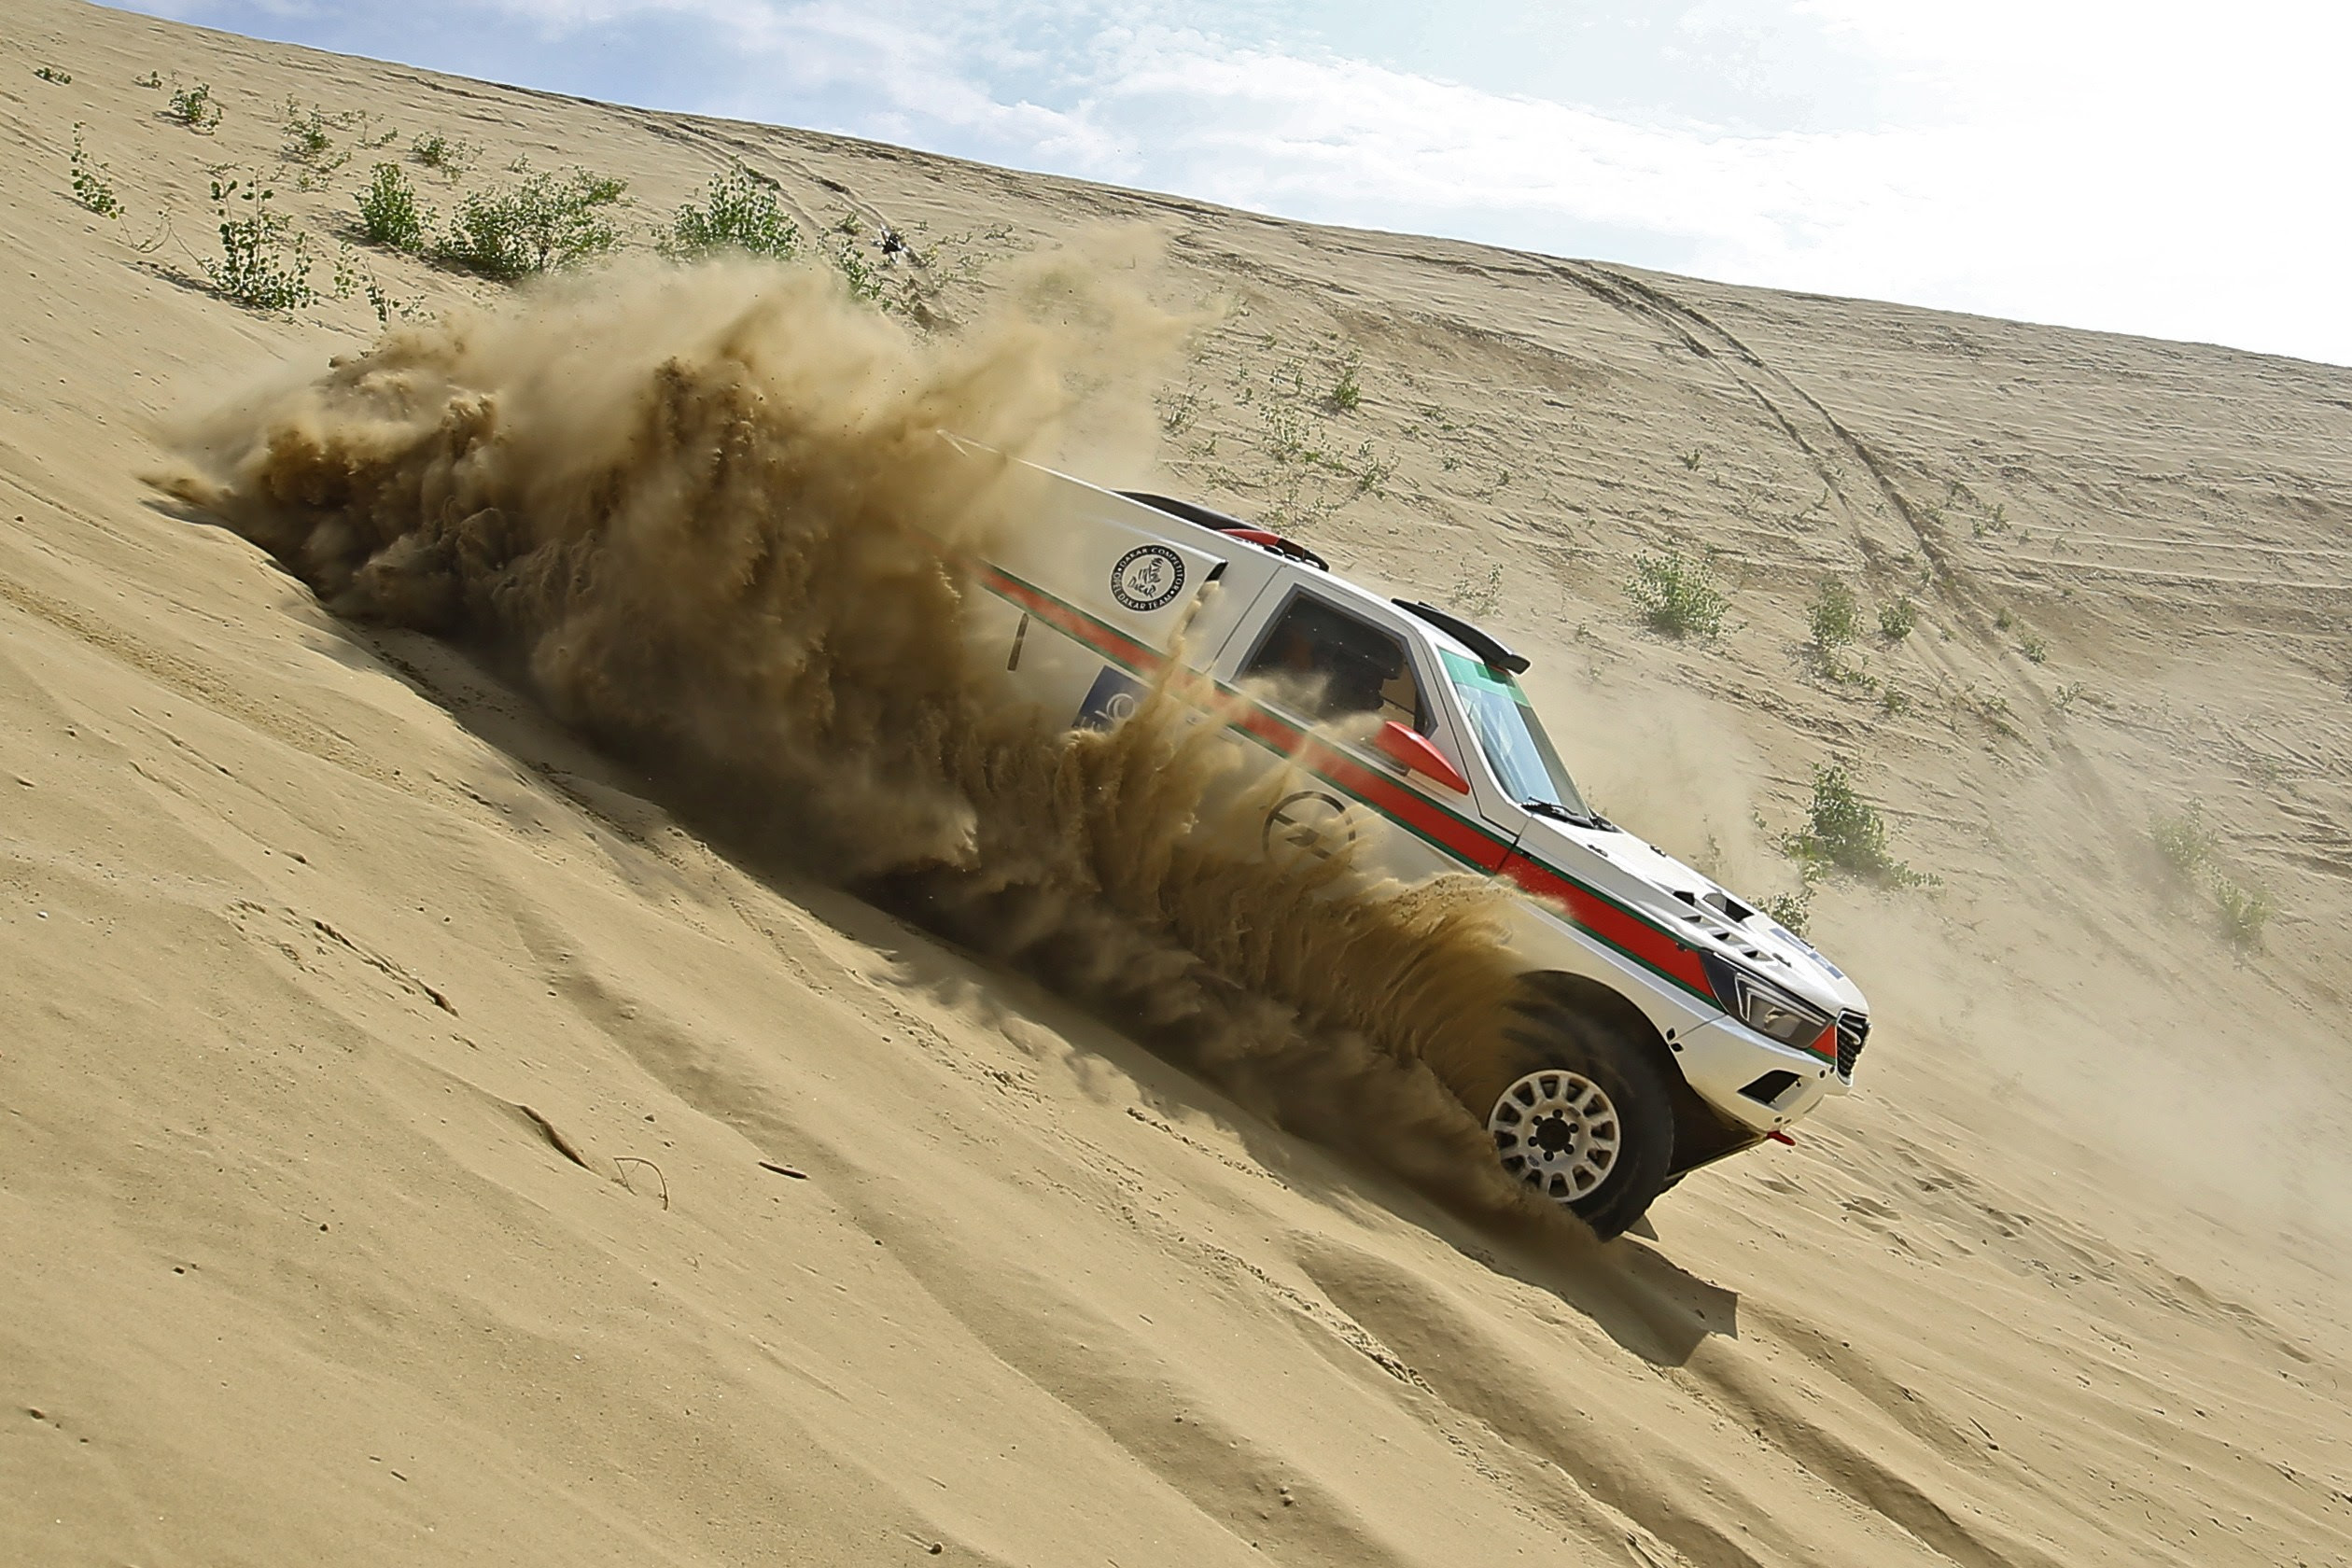 Szalayék Balázsék indulnak a Dakar rallyn!